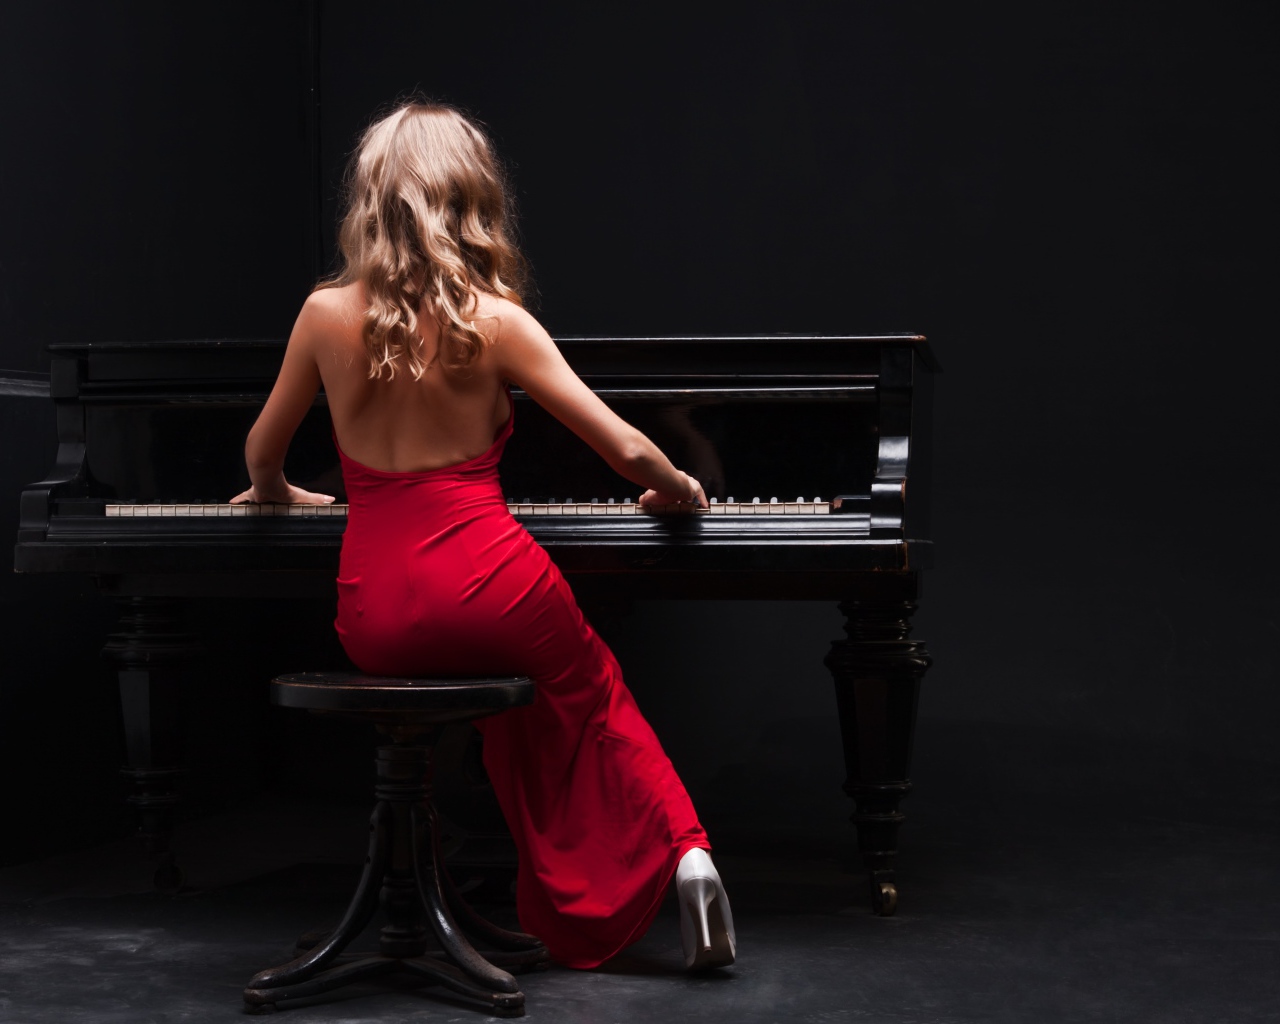 Молодая девушка в красном платье играет на пианино